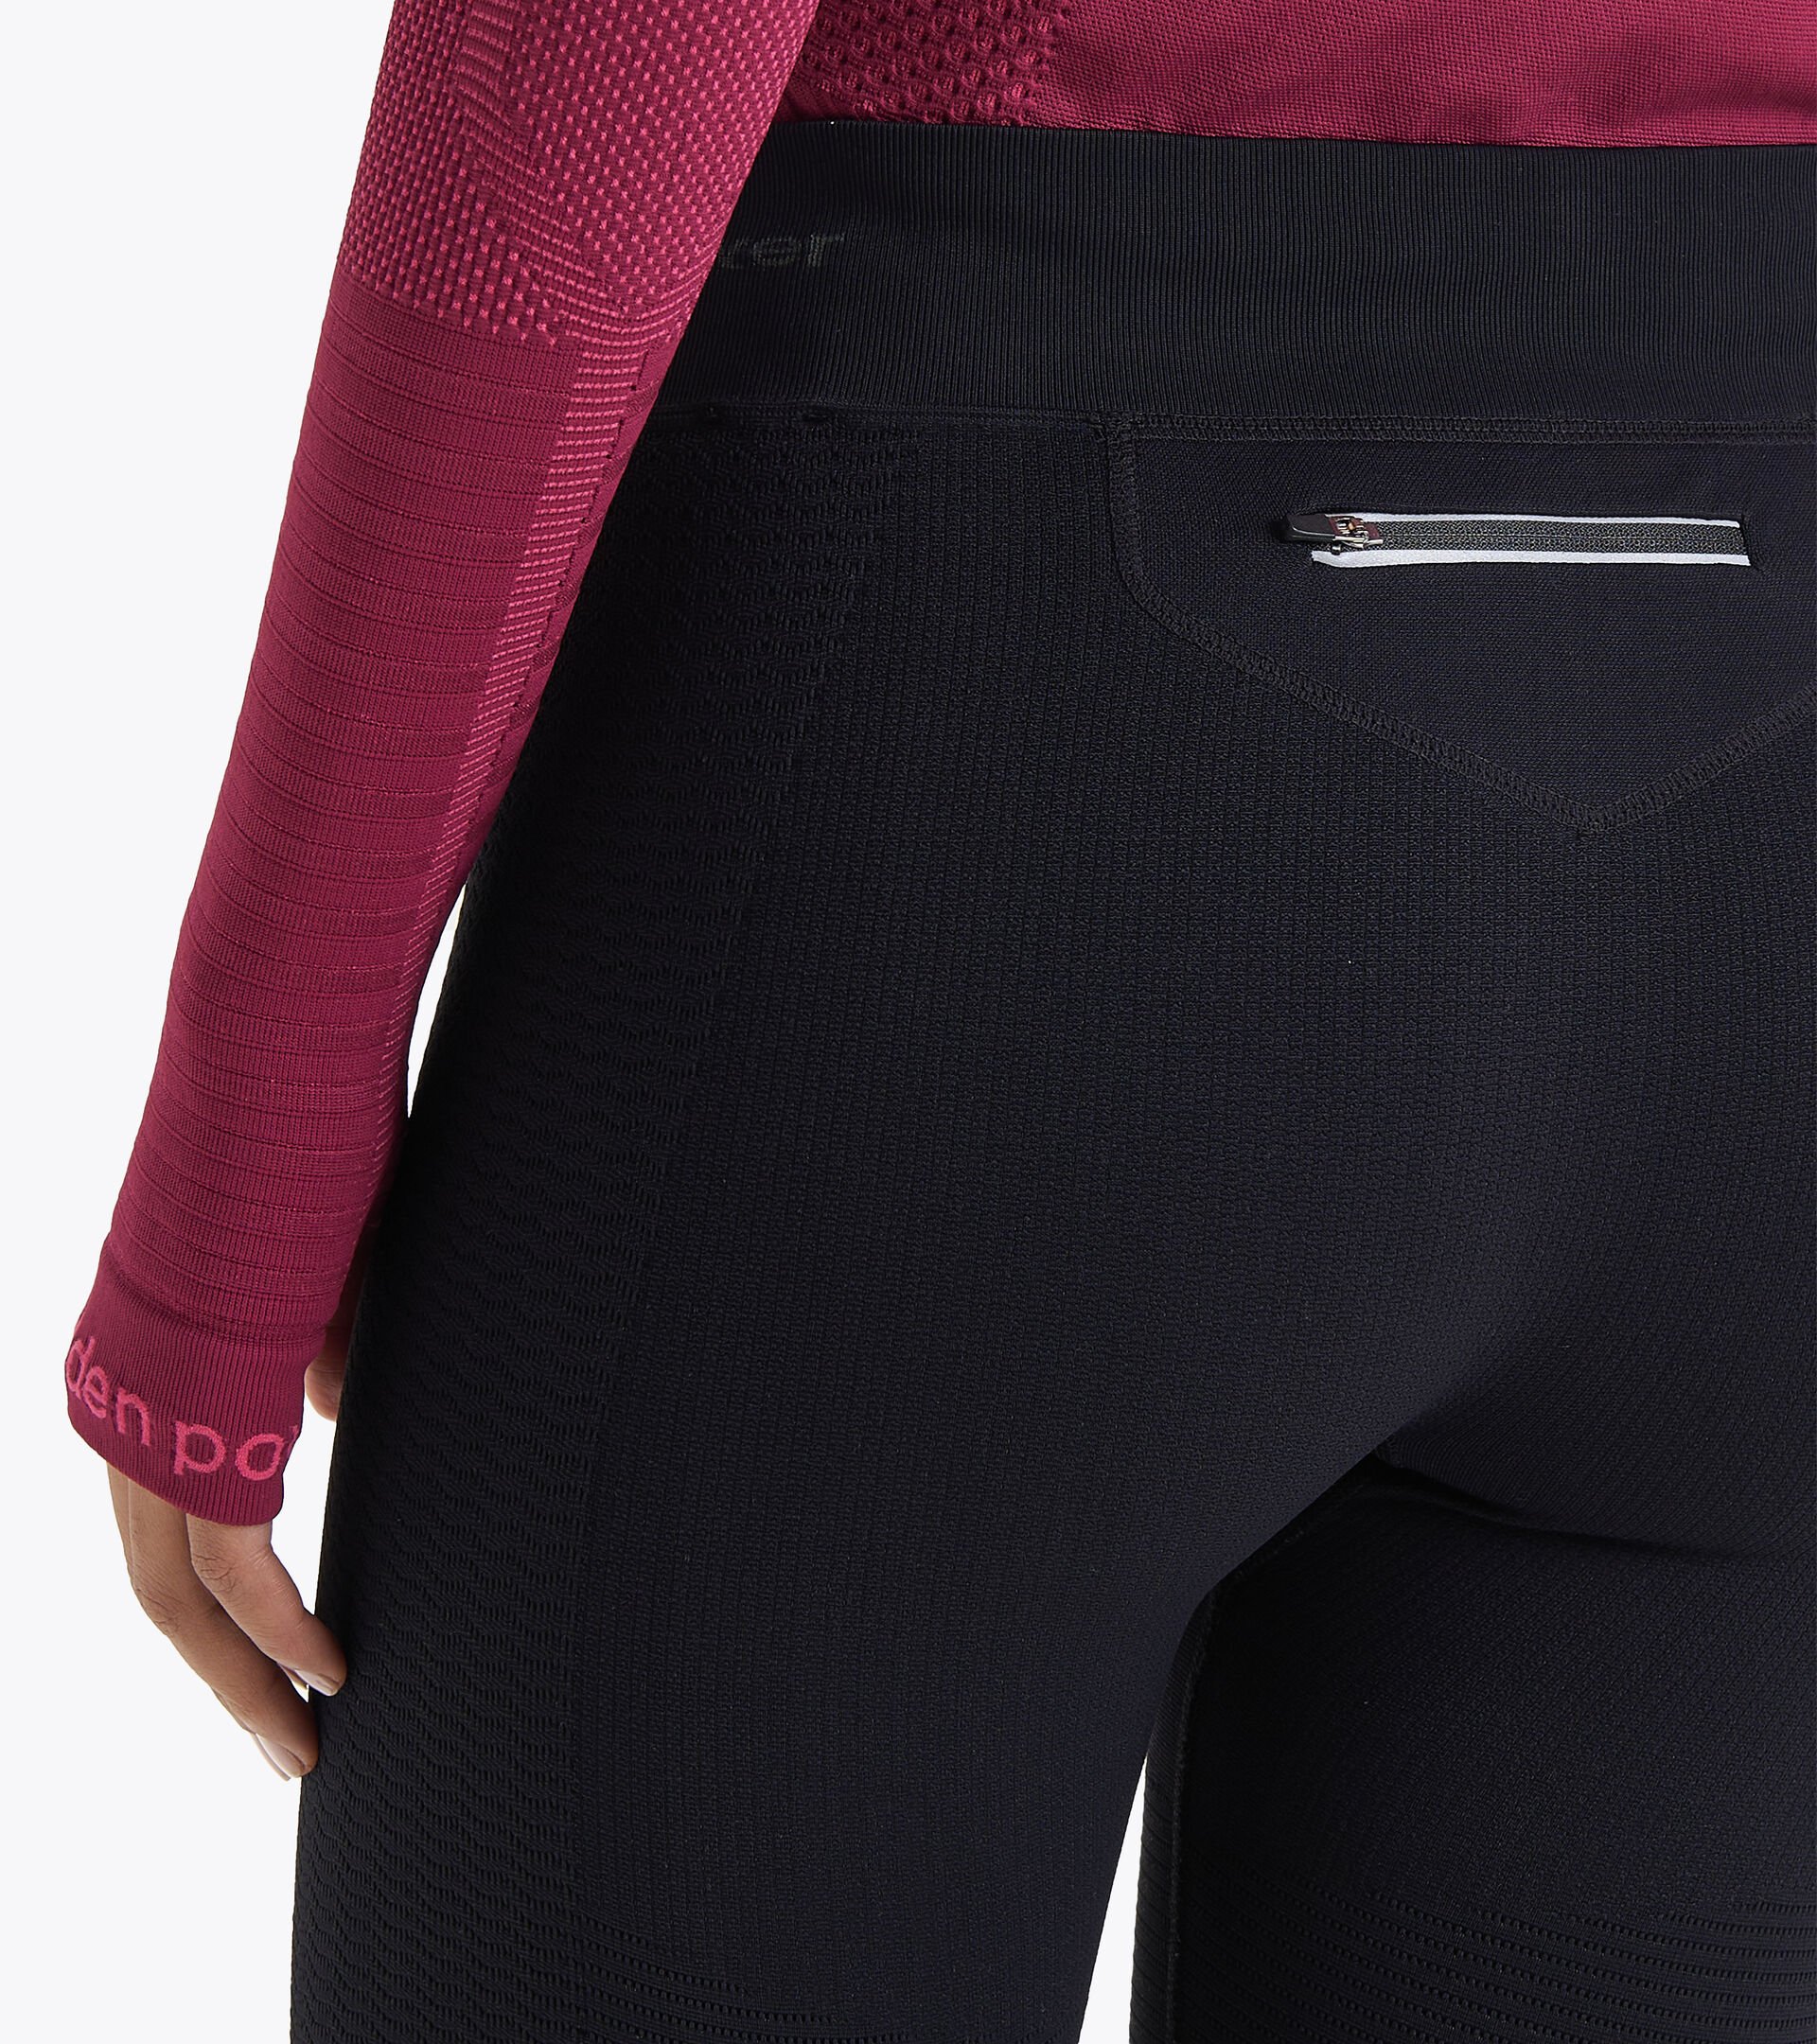 Italian-made running trousers - Women L. HIDDEN POWER PANTS BLACK - Diadora